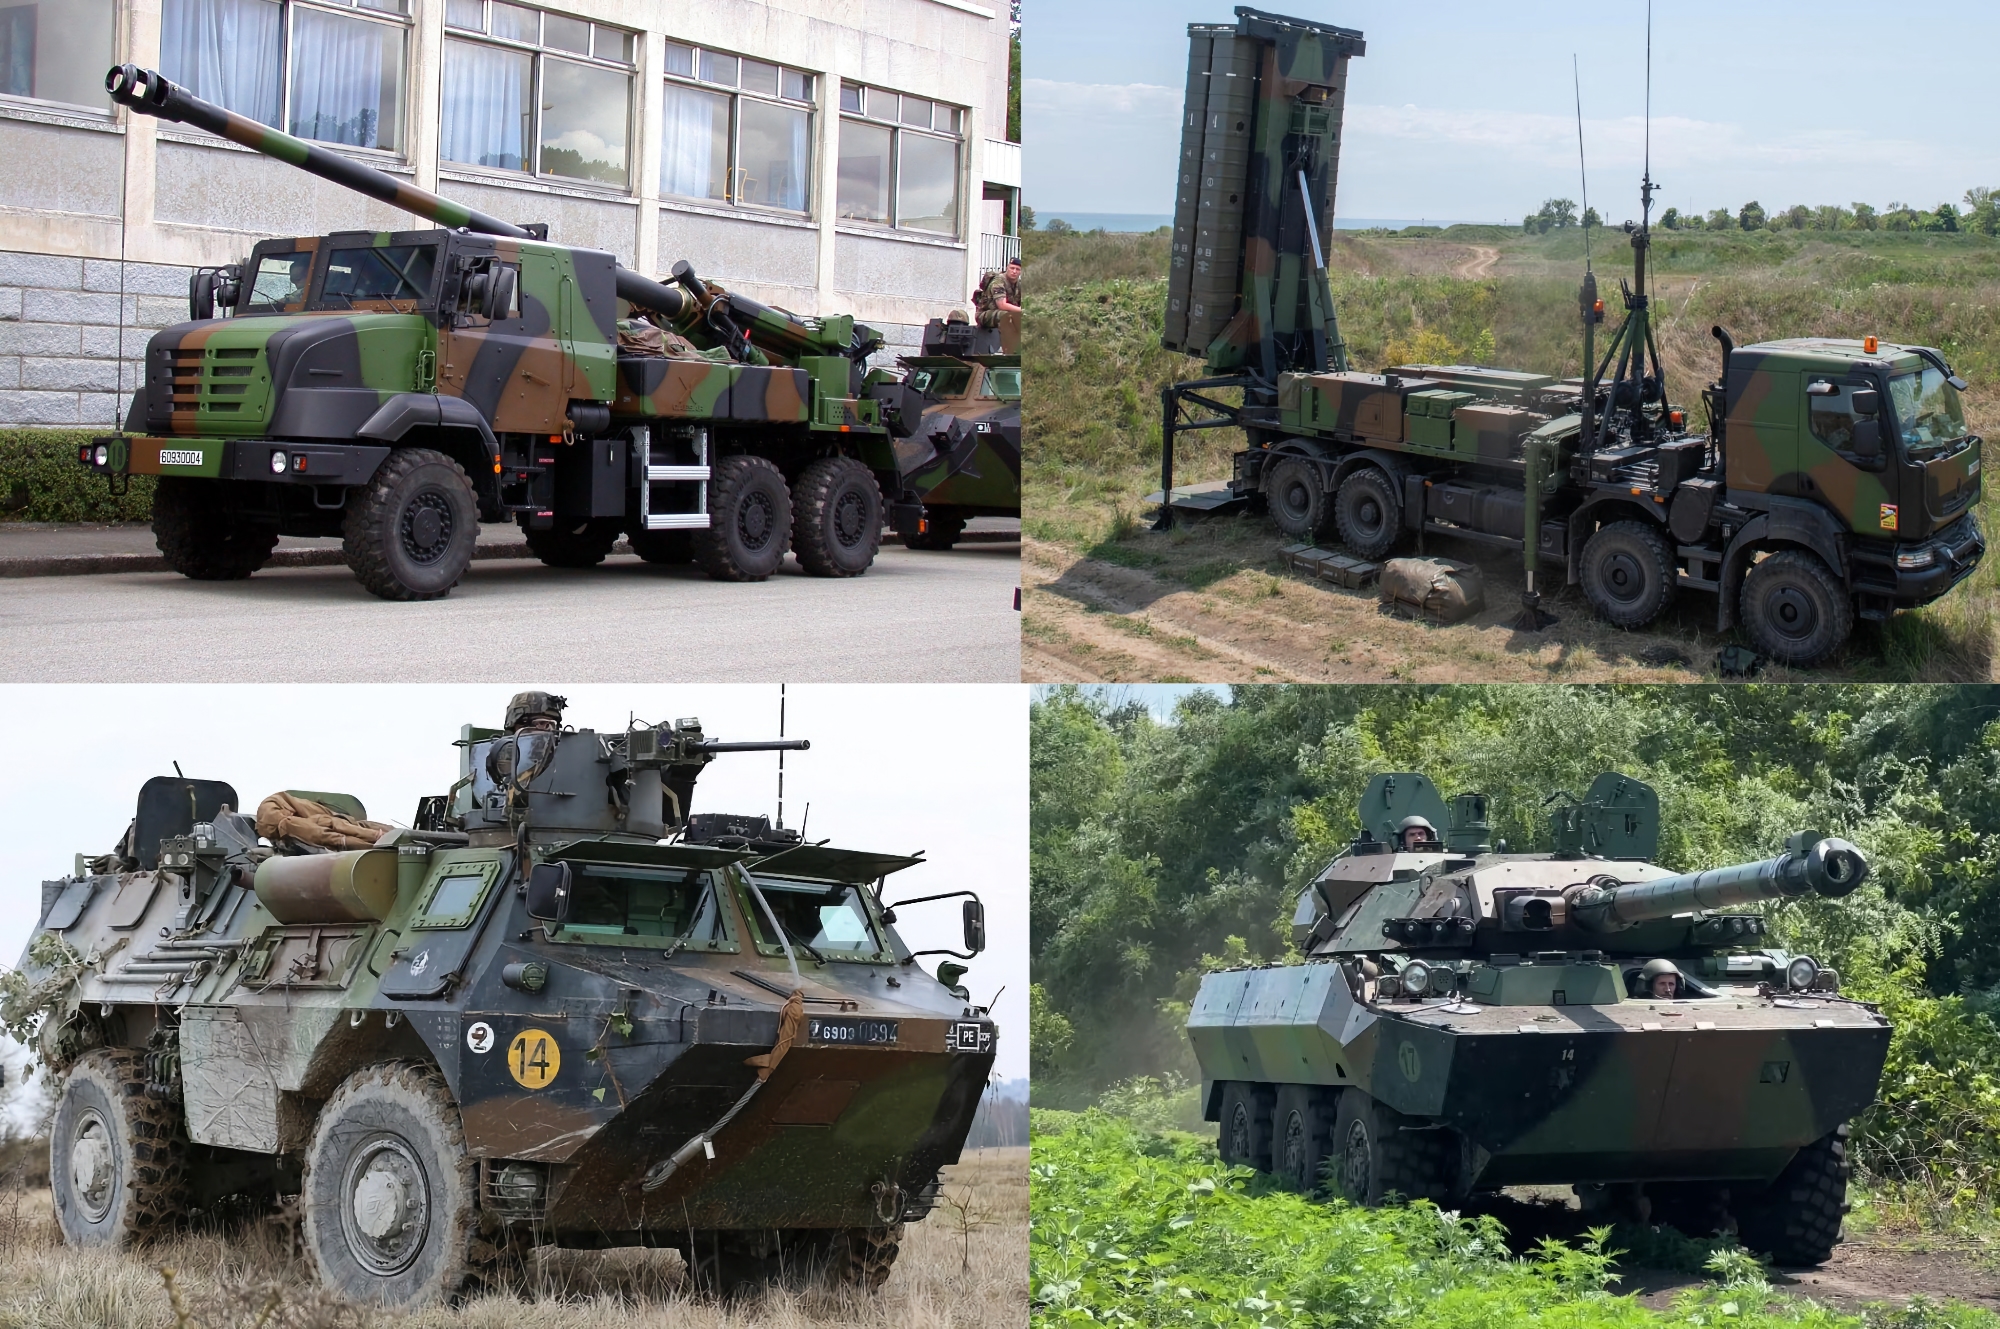 Caesar artillerisystemer, SAMP/T SAM'er, AMX10 RC hjulkøretøjer og VAB pansrede mandskabsvogne: Frankrig afslører detaljeret liste over militærhjælp til Ukraine